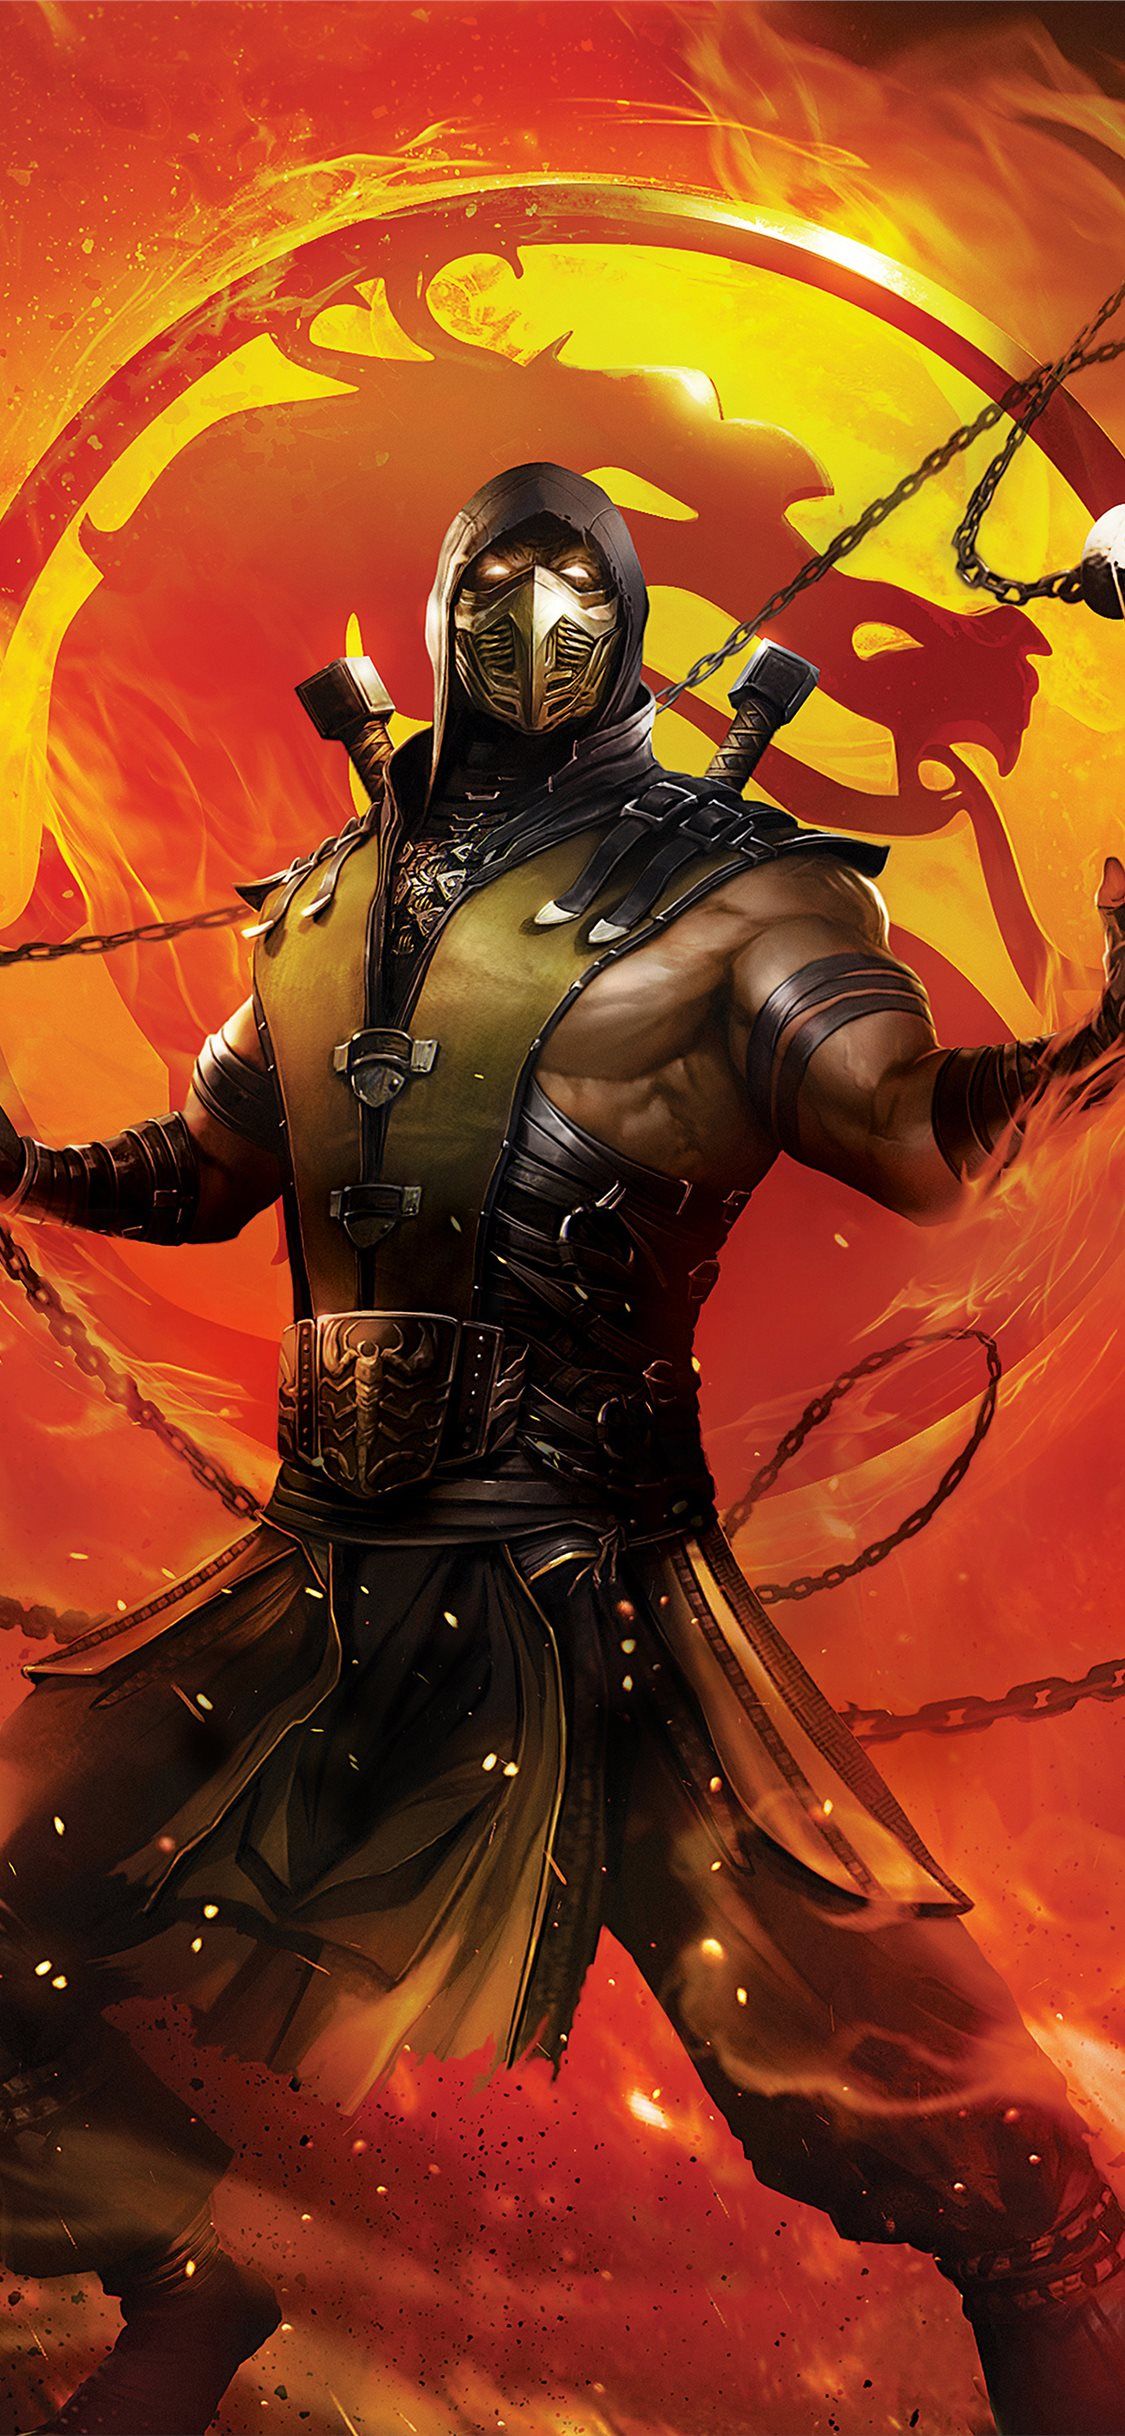 Best Mortal kombat iPhone X Wallpaper HD [2020]